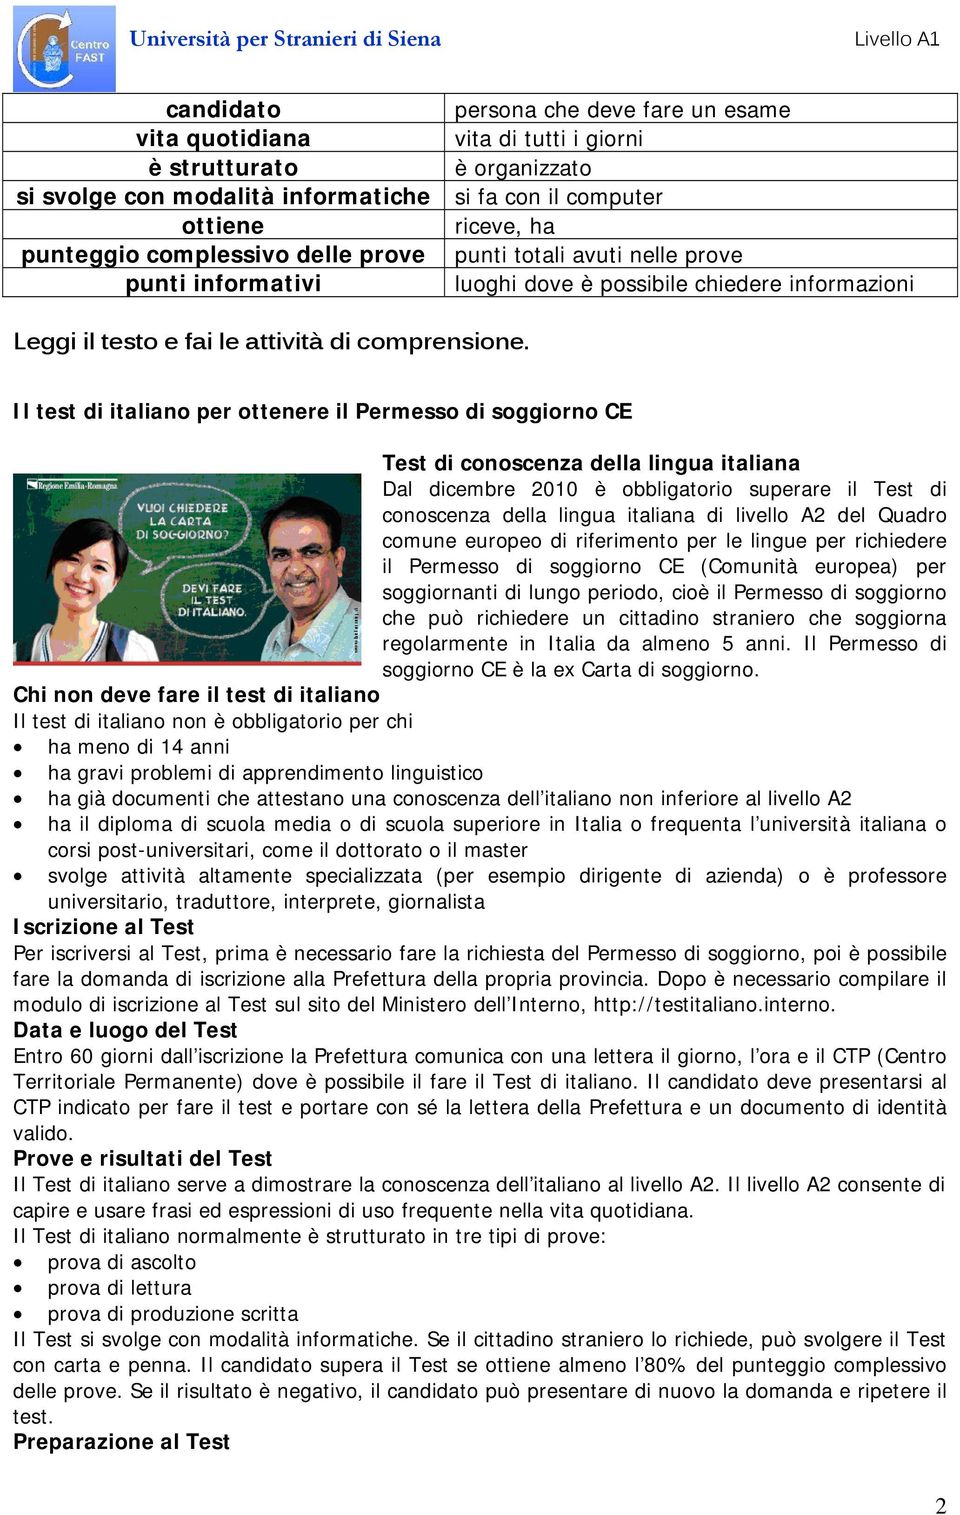 Il test di italiano per ottenere il Permesso di soggiorno CE Test di conoscenza della lingua italiana Dal dicembre 2010 è obbligatorio superare il Test di conoscenza della lingua italiana di livello